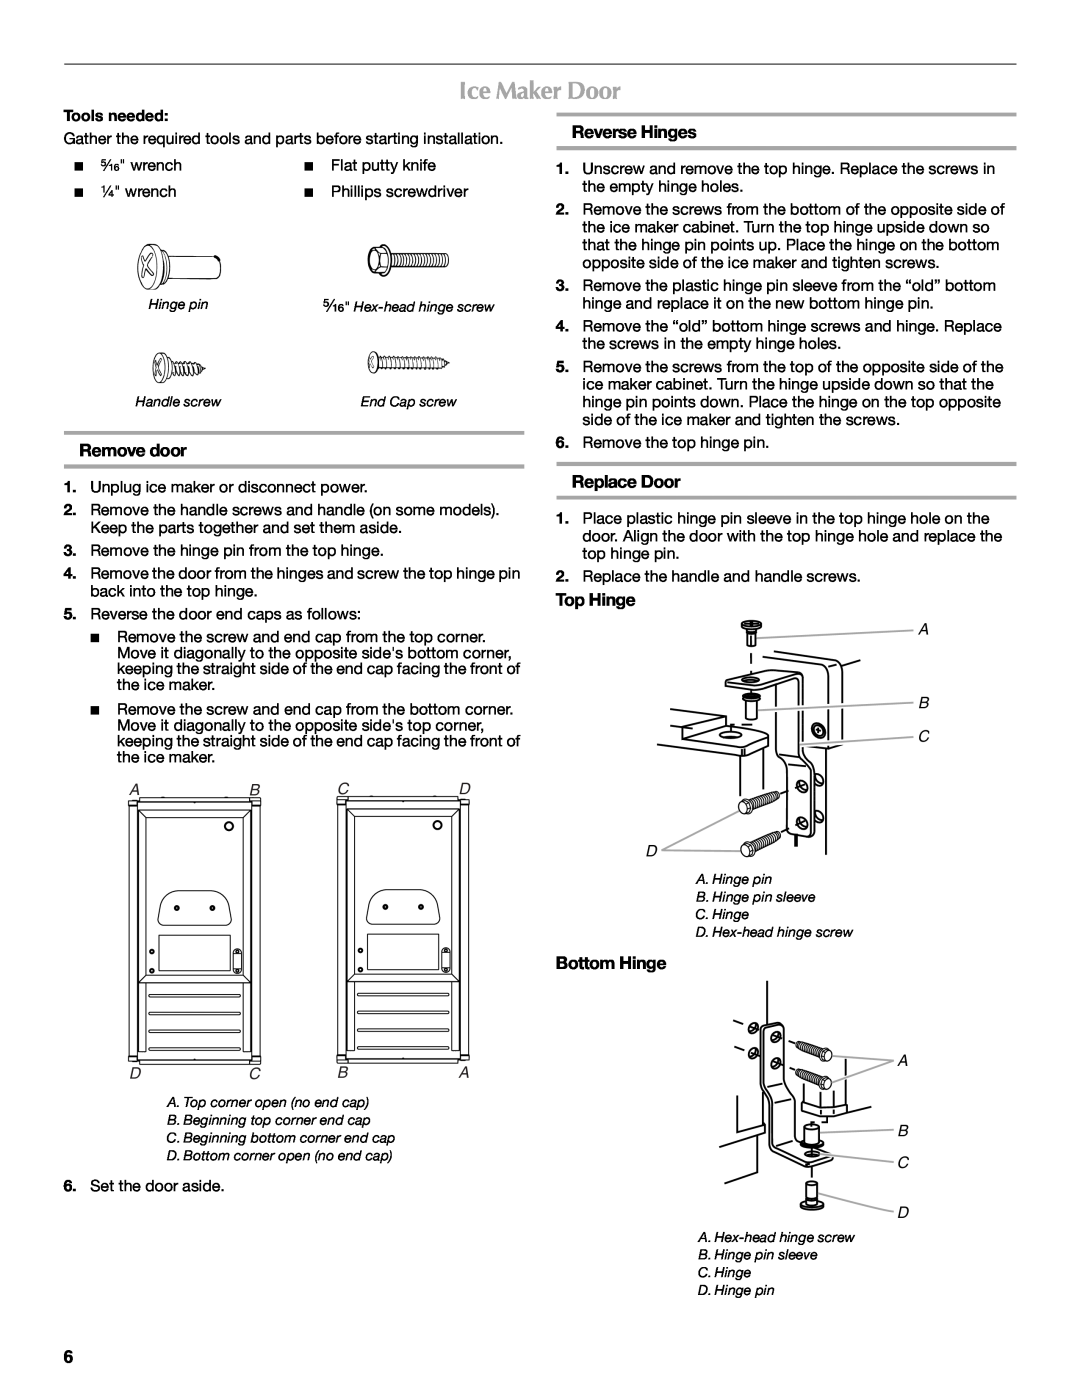 Maytag W10206510A Ice Maker Door, Remove door, Reverse Hinges, Replace Door, Top Hinge, Bottom Hinge, Ab Cd Dc Ba, A B C D 